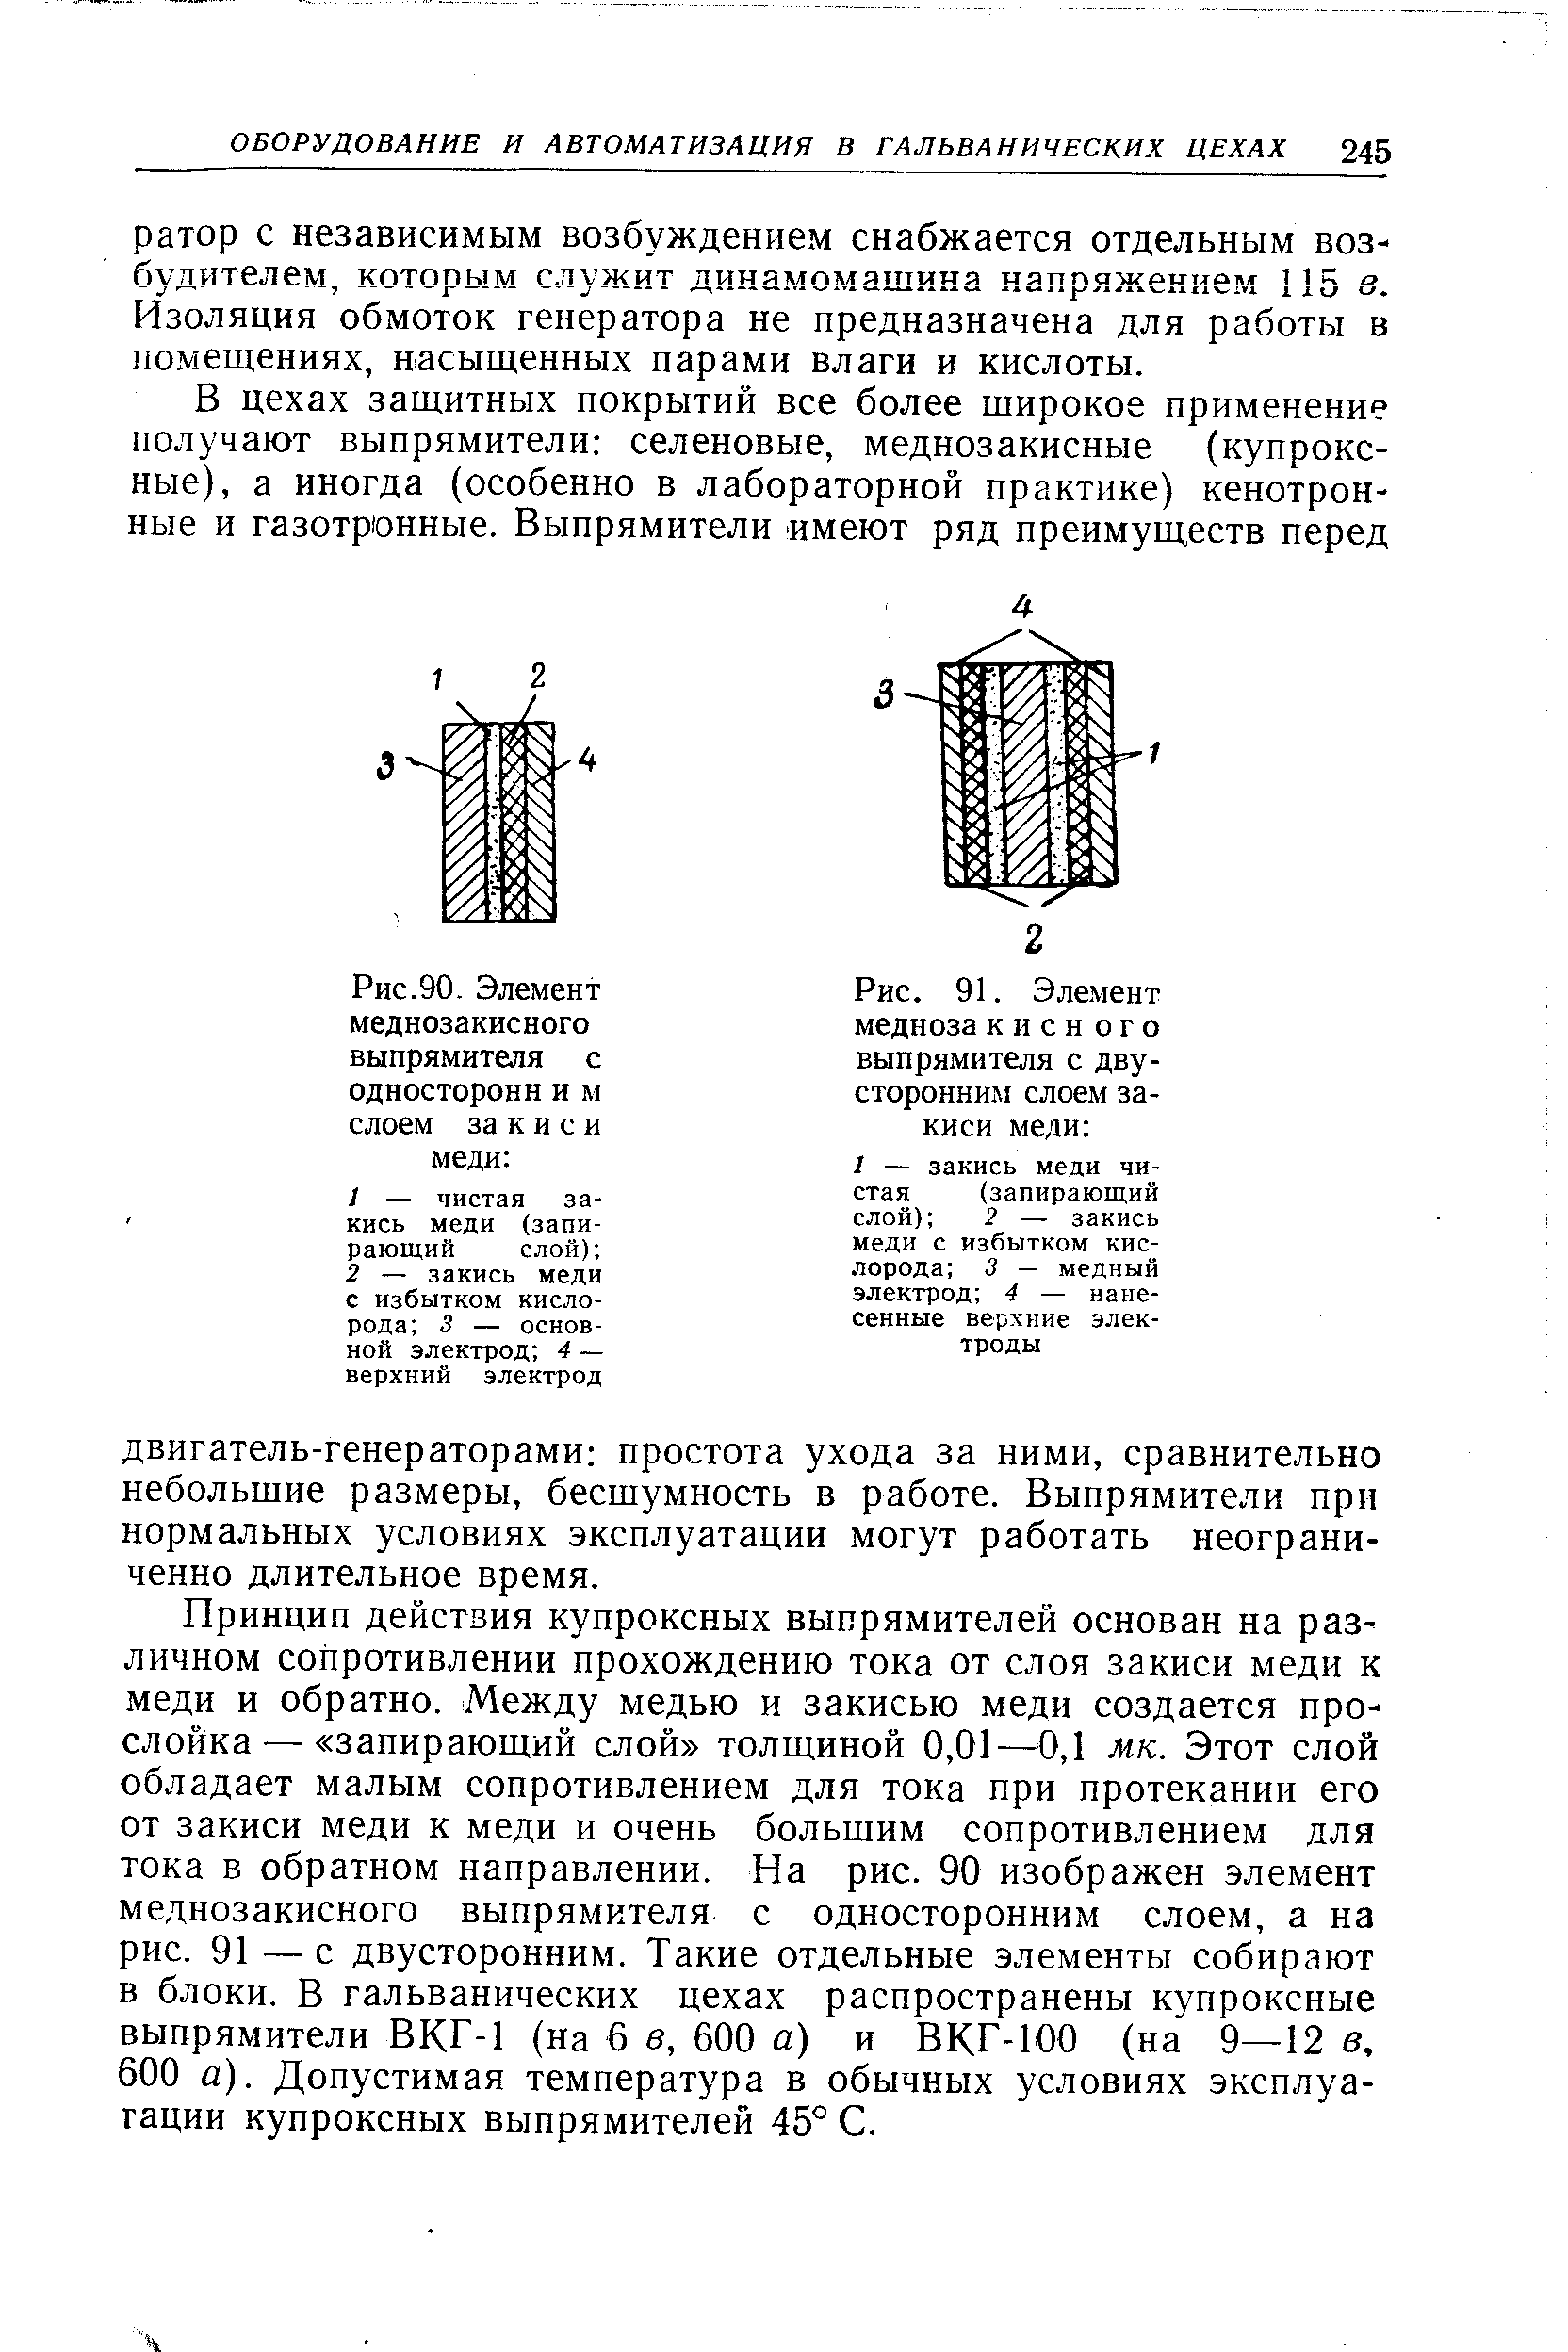 Рис.90- Элемент меднозакисного выпрямителя с односторонн и м слоем за к и с и меди 
